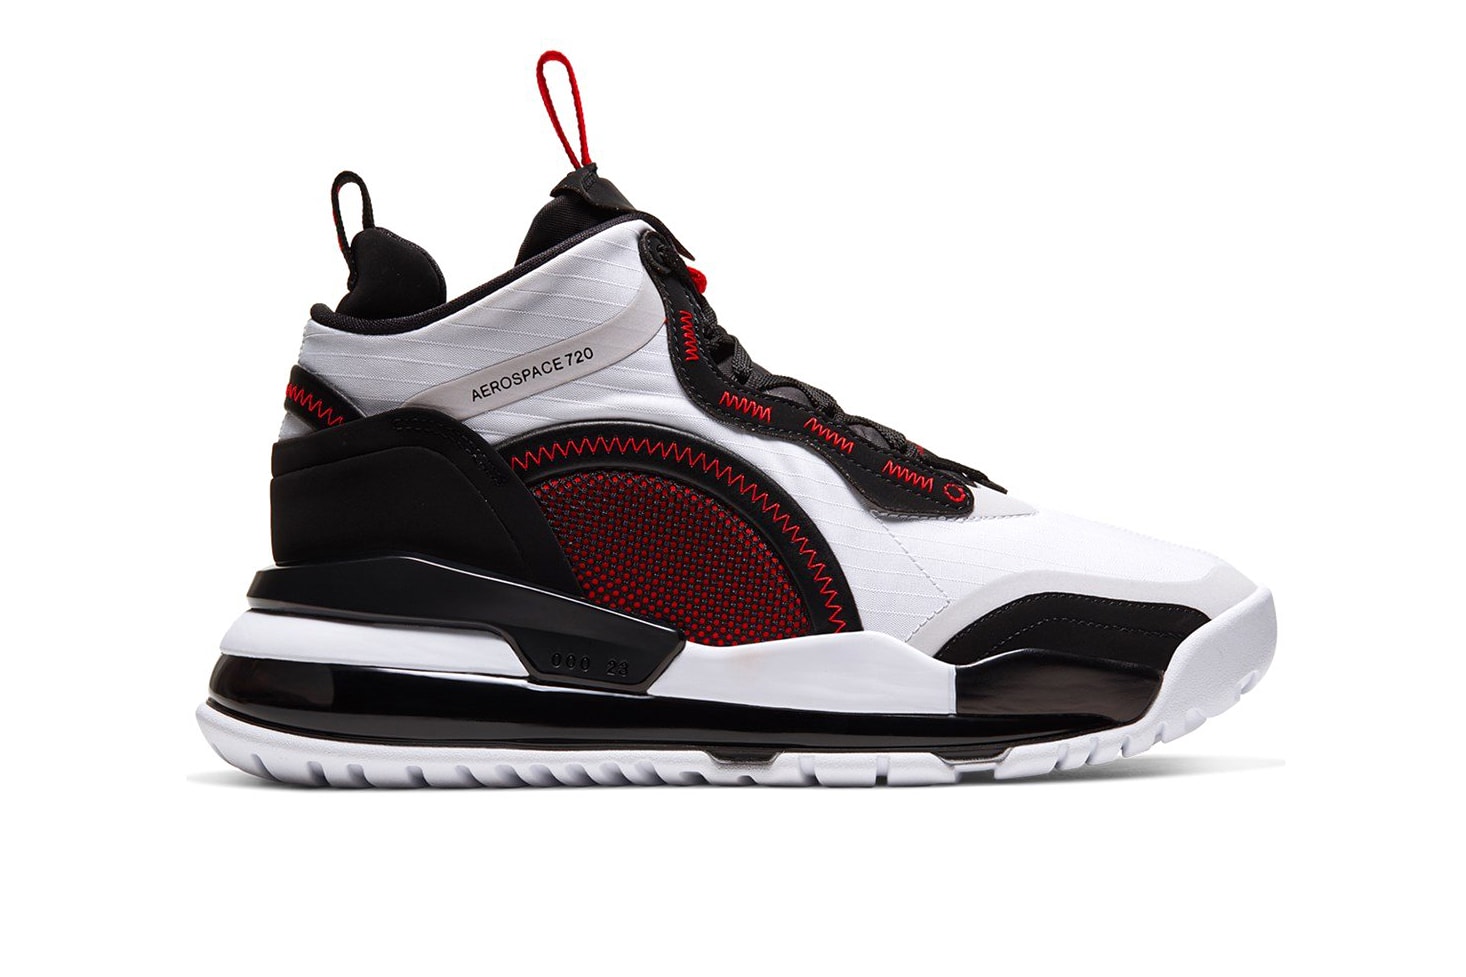 Jordan Aerospace 720 "White/Gym Red/Black" release info nike sneakers footwear swoosh Bv5502-100